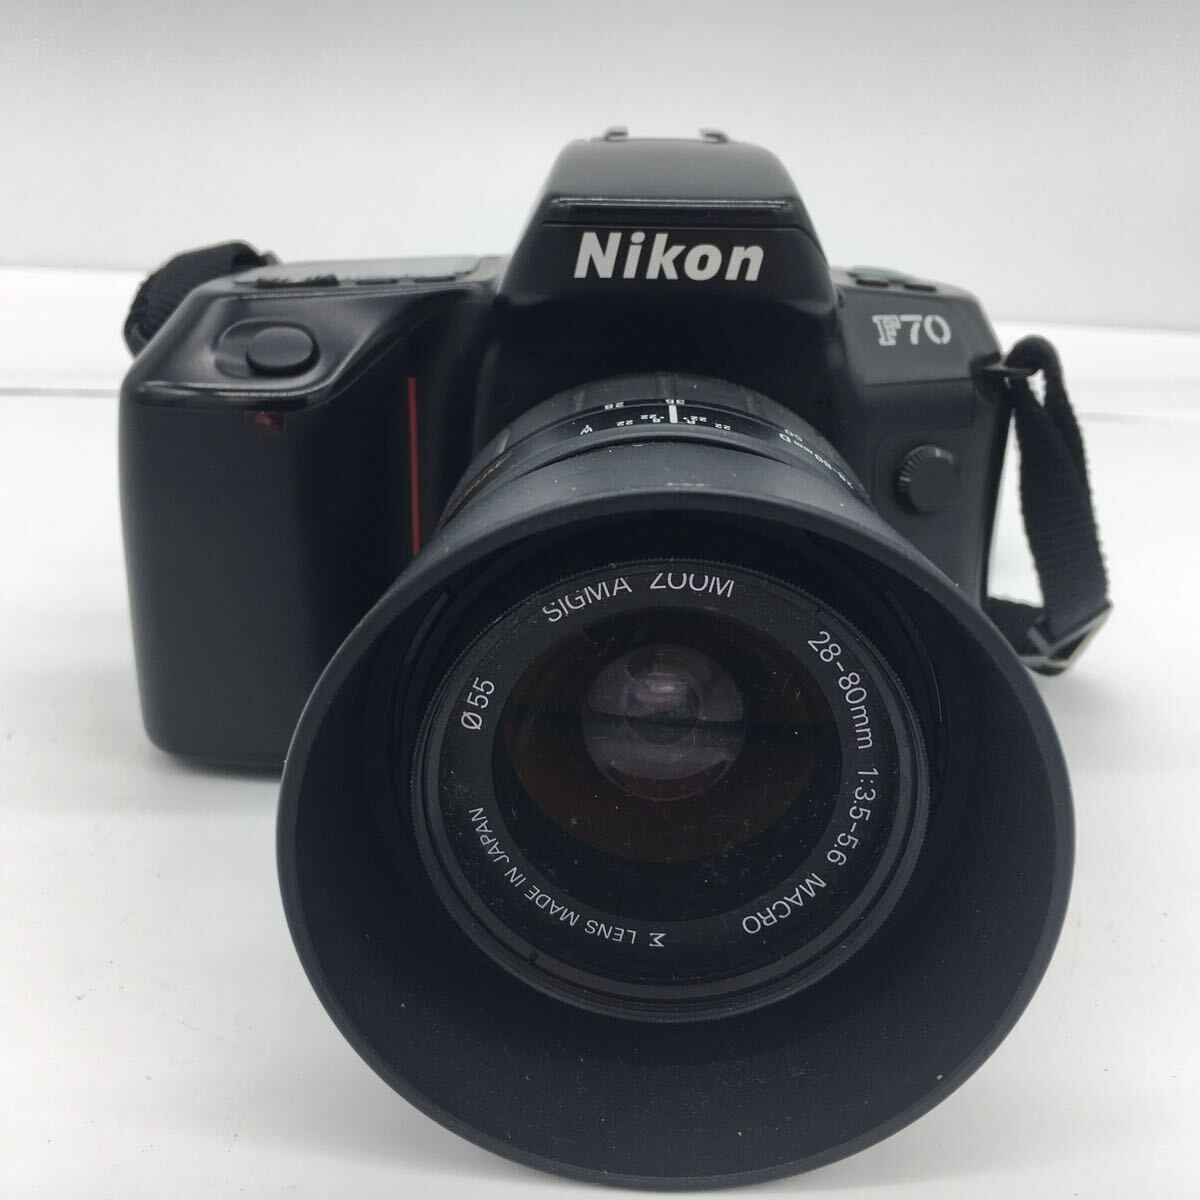 Nikon ニコン F70 ボディ SIGMA ZOOM 28-80mm 1:3.5-5.6 MACRO Φ55 シグマ レンズ LENS 一眼レフ フィルム カメラ 通電確認済み 現状品_画像2